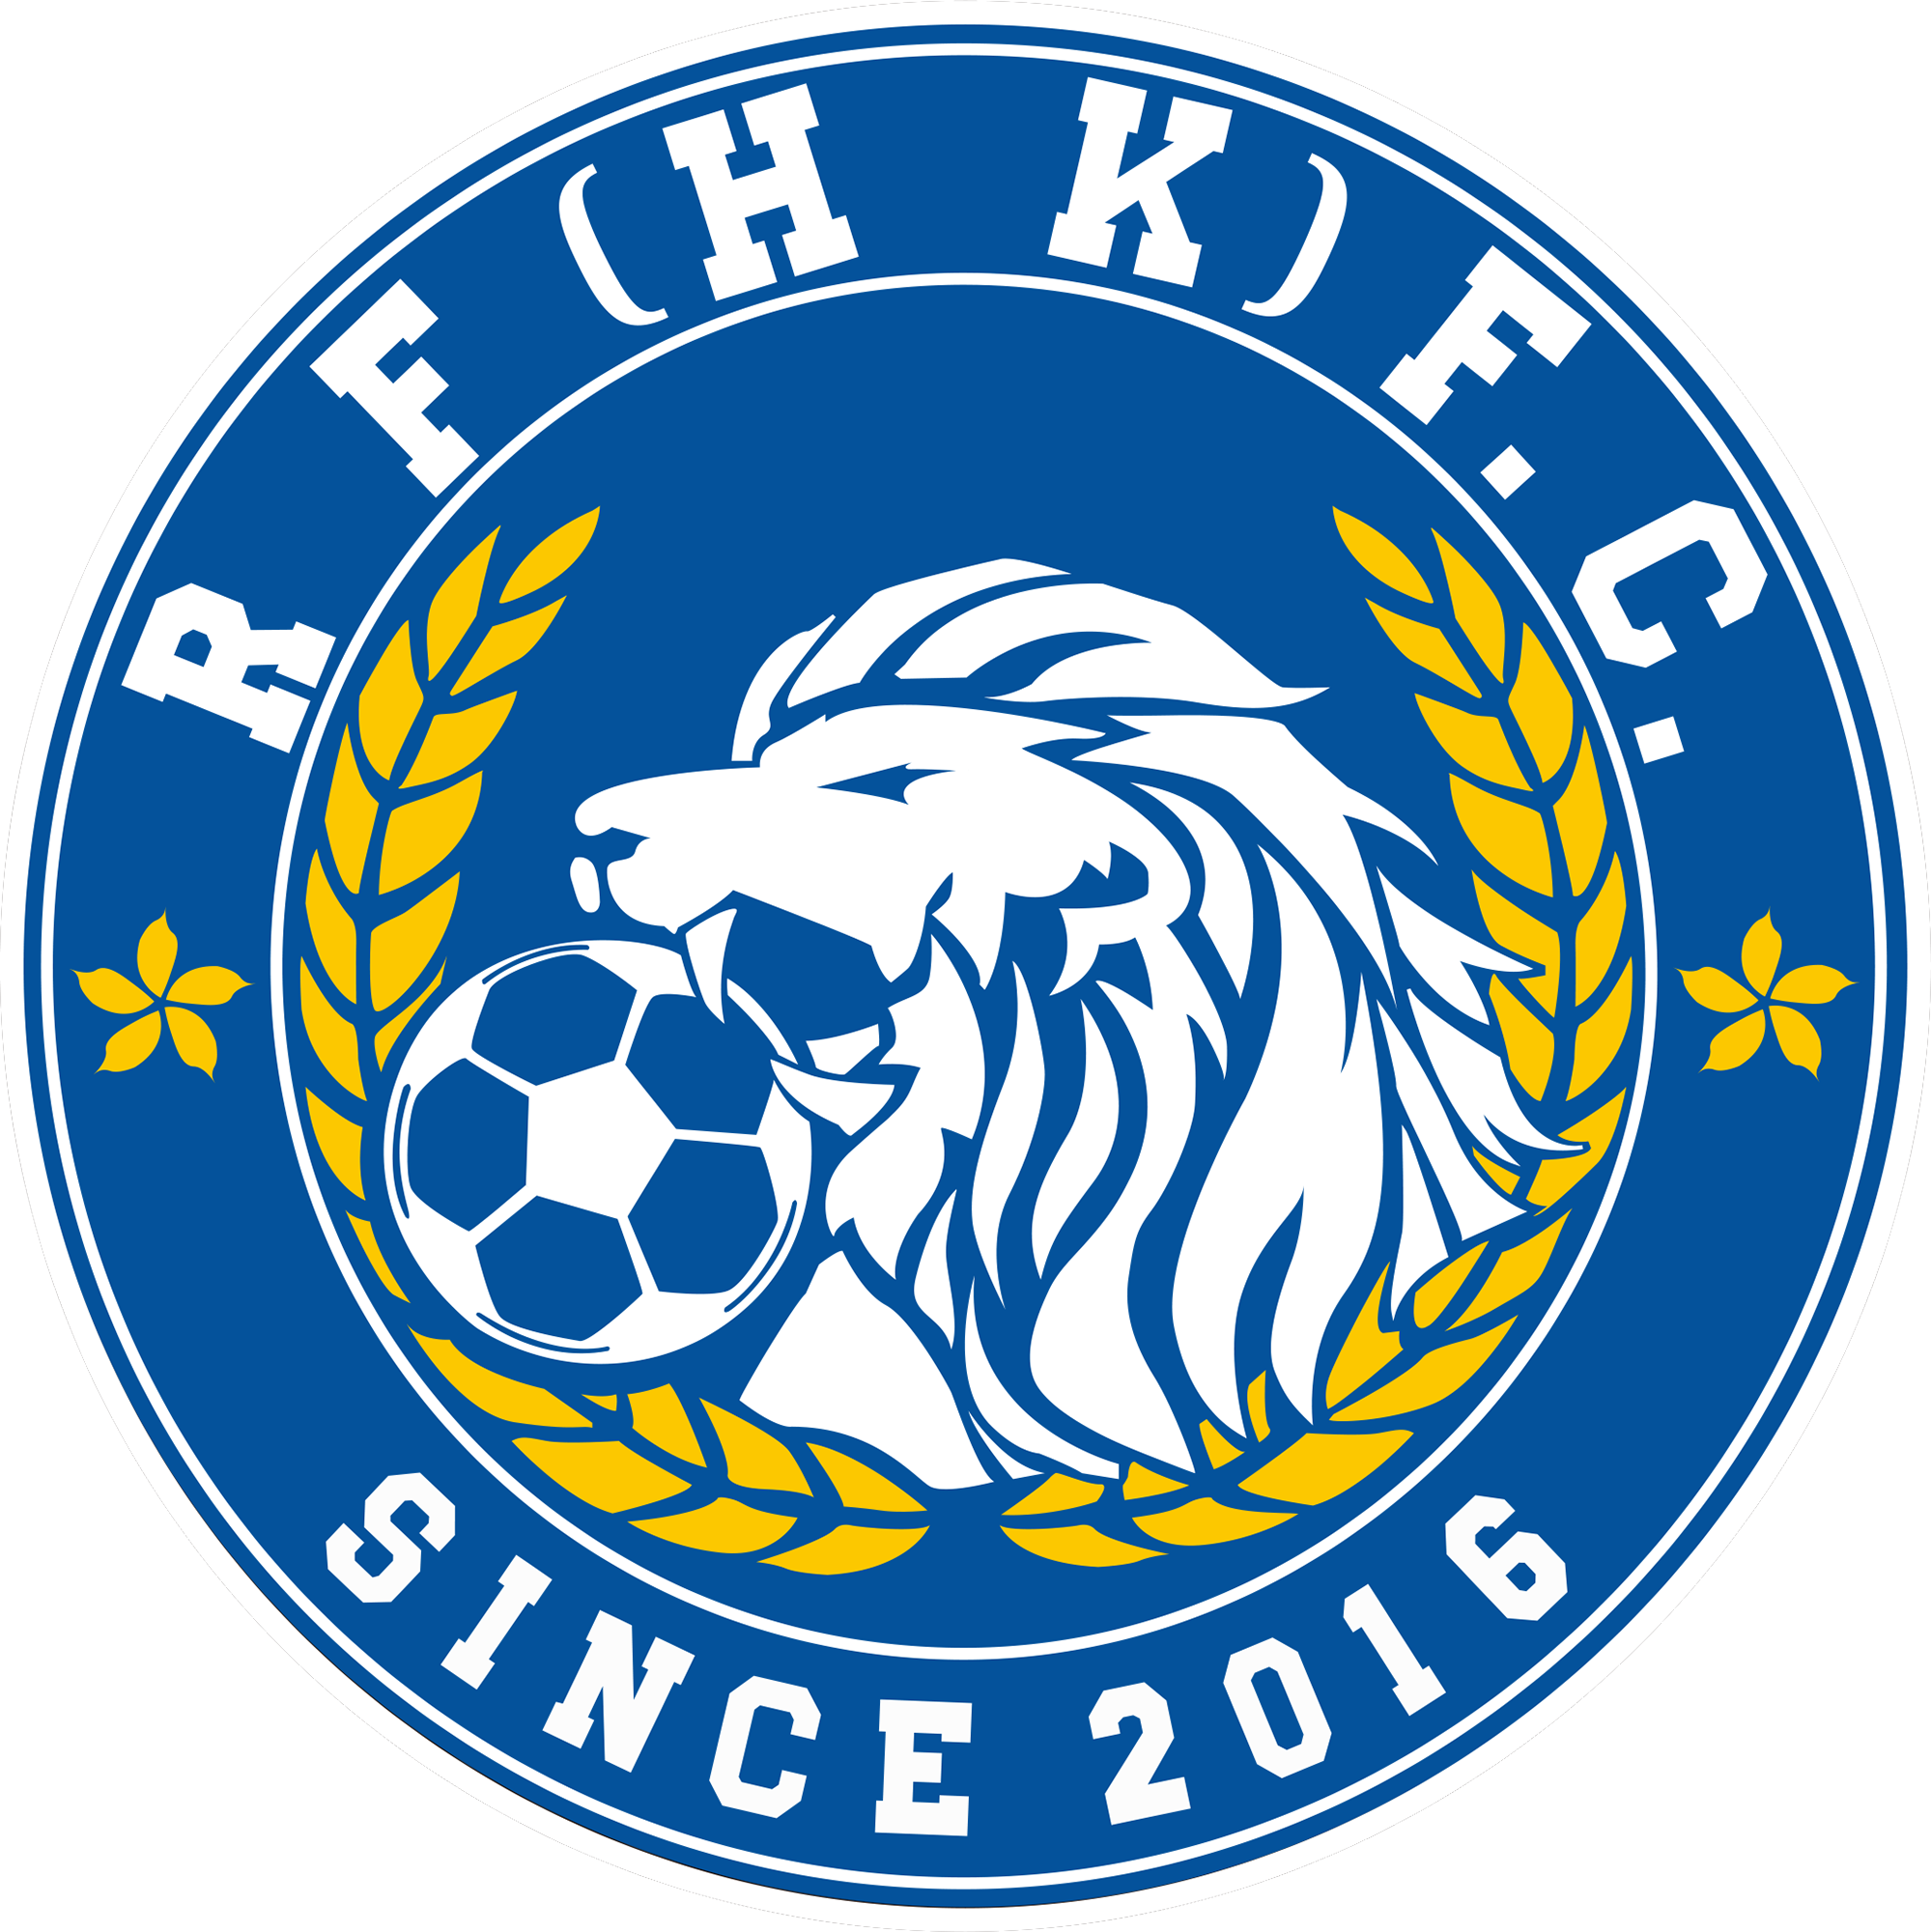 R&F富力足球俱樂部(RF富力足球俱樂部)